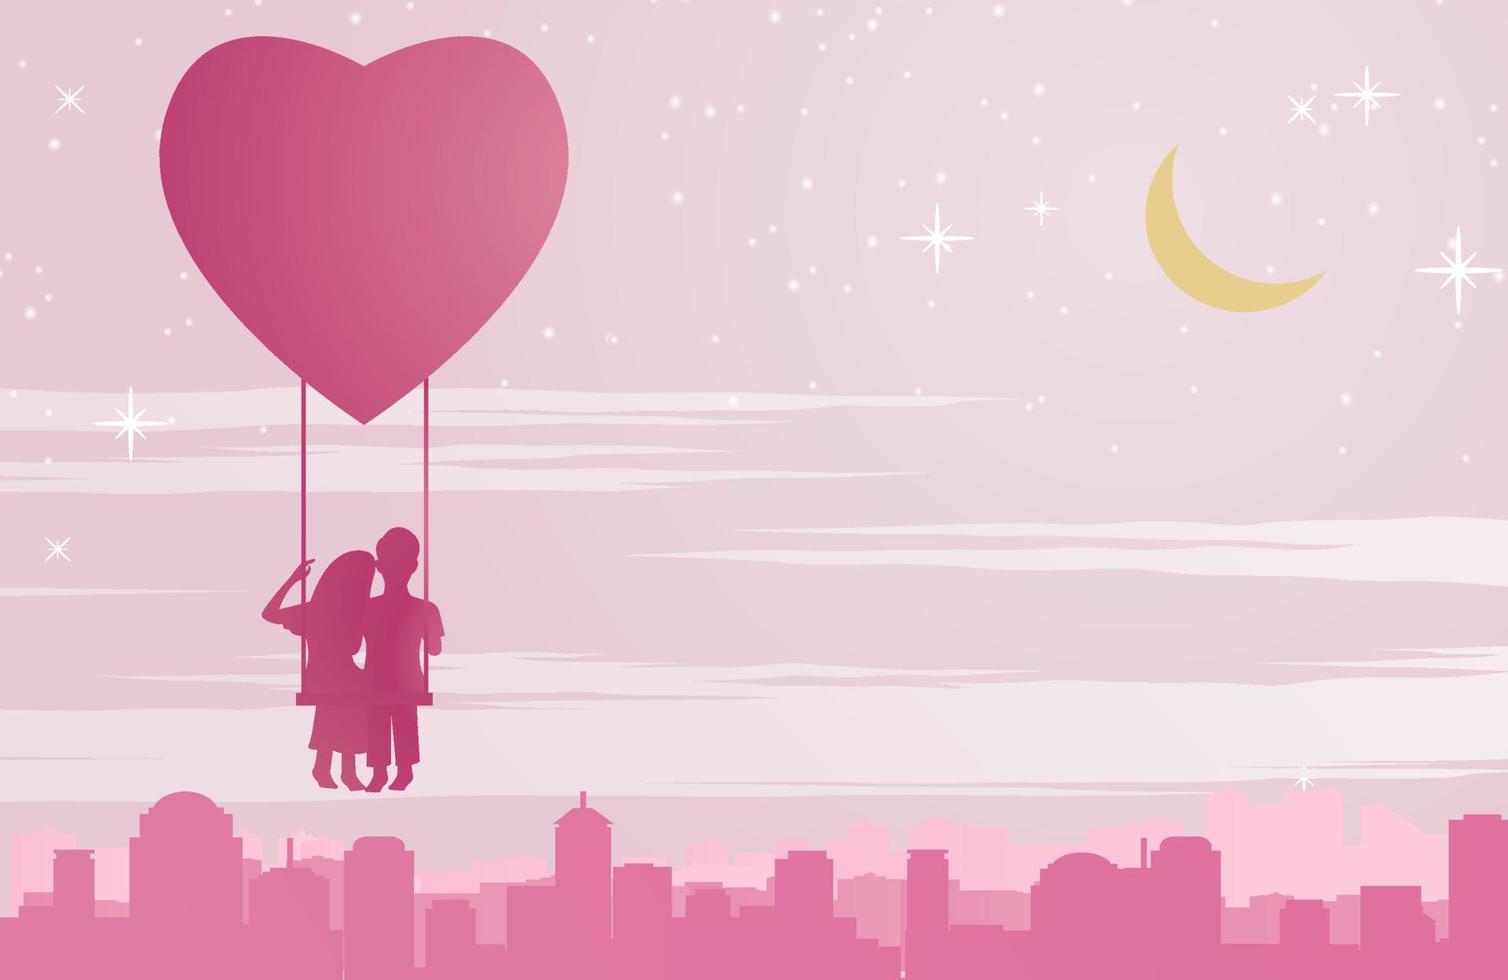 par sitter på en gunga som svävar i form av en ballong ovanför staden, konceptkonst betyder kärlek gör människor glada som fluga i himlen vektor